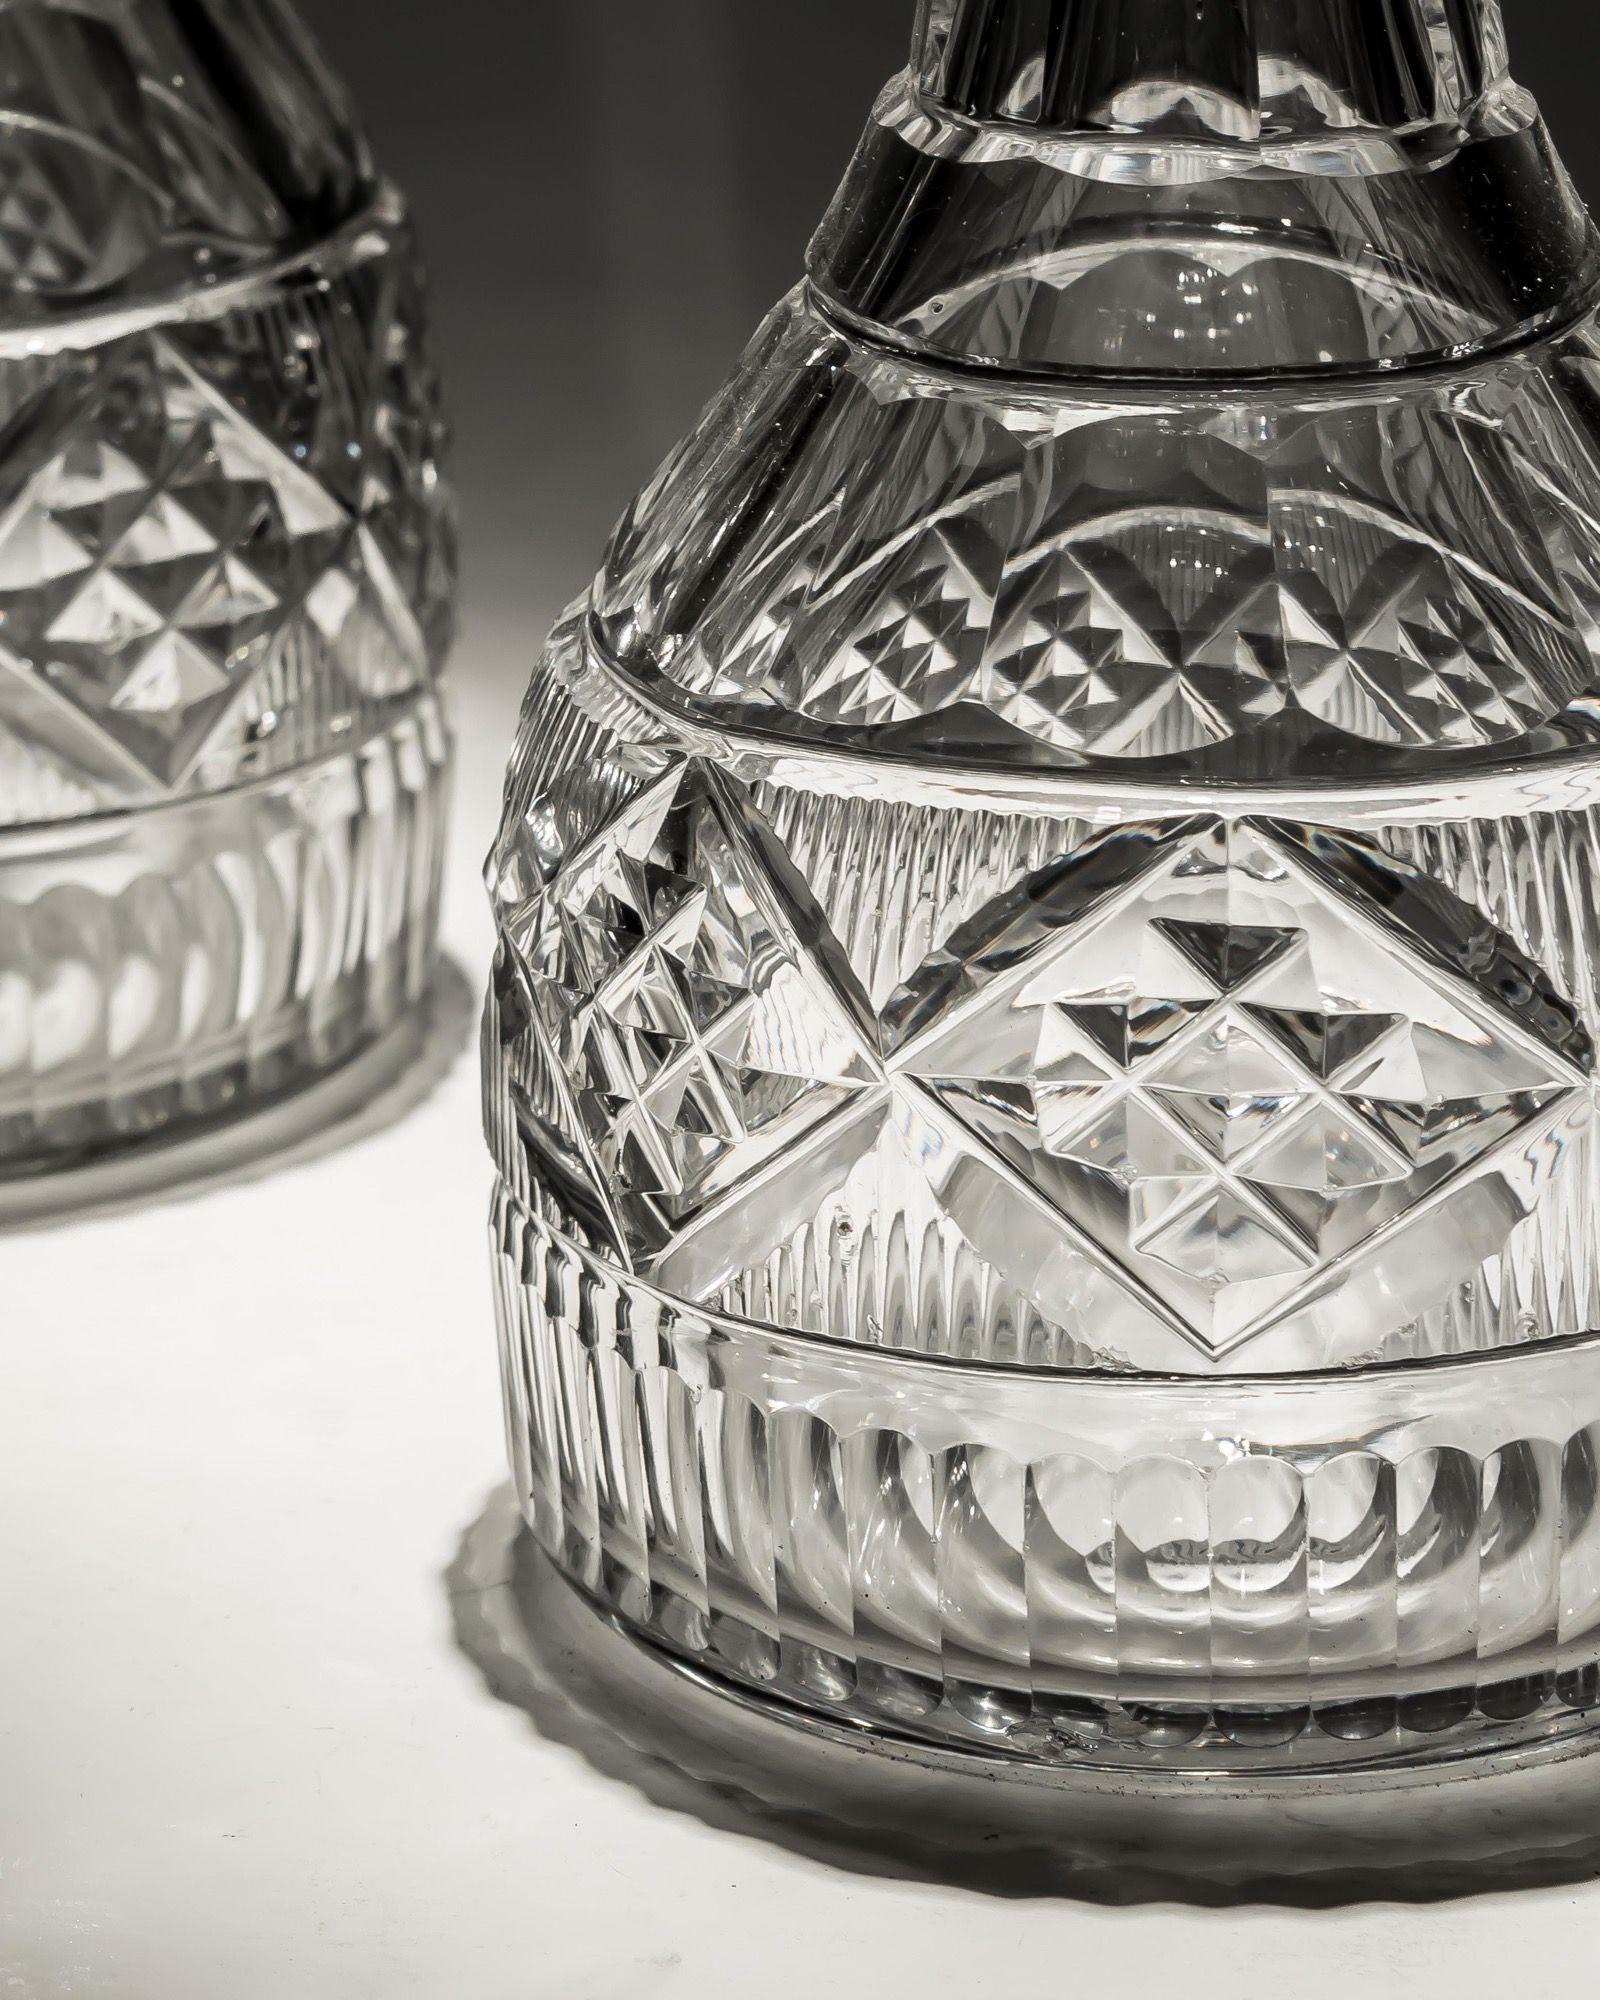 Une paire inhabituelle de carafes irlandaises avec trois anneaux coupés, une bande coupée en tranches, des panneaux coupés en diamants et une base coupée en cannelures.